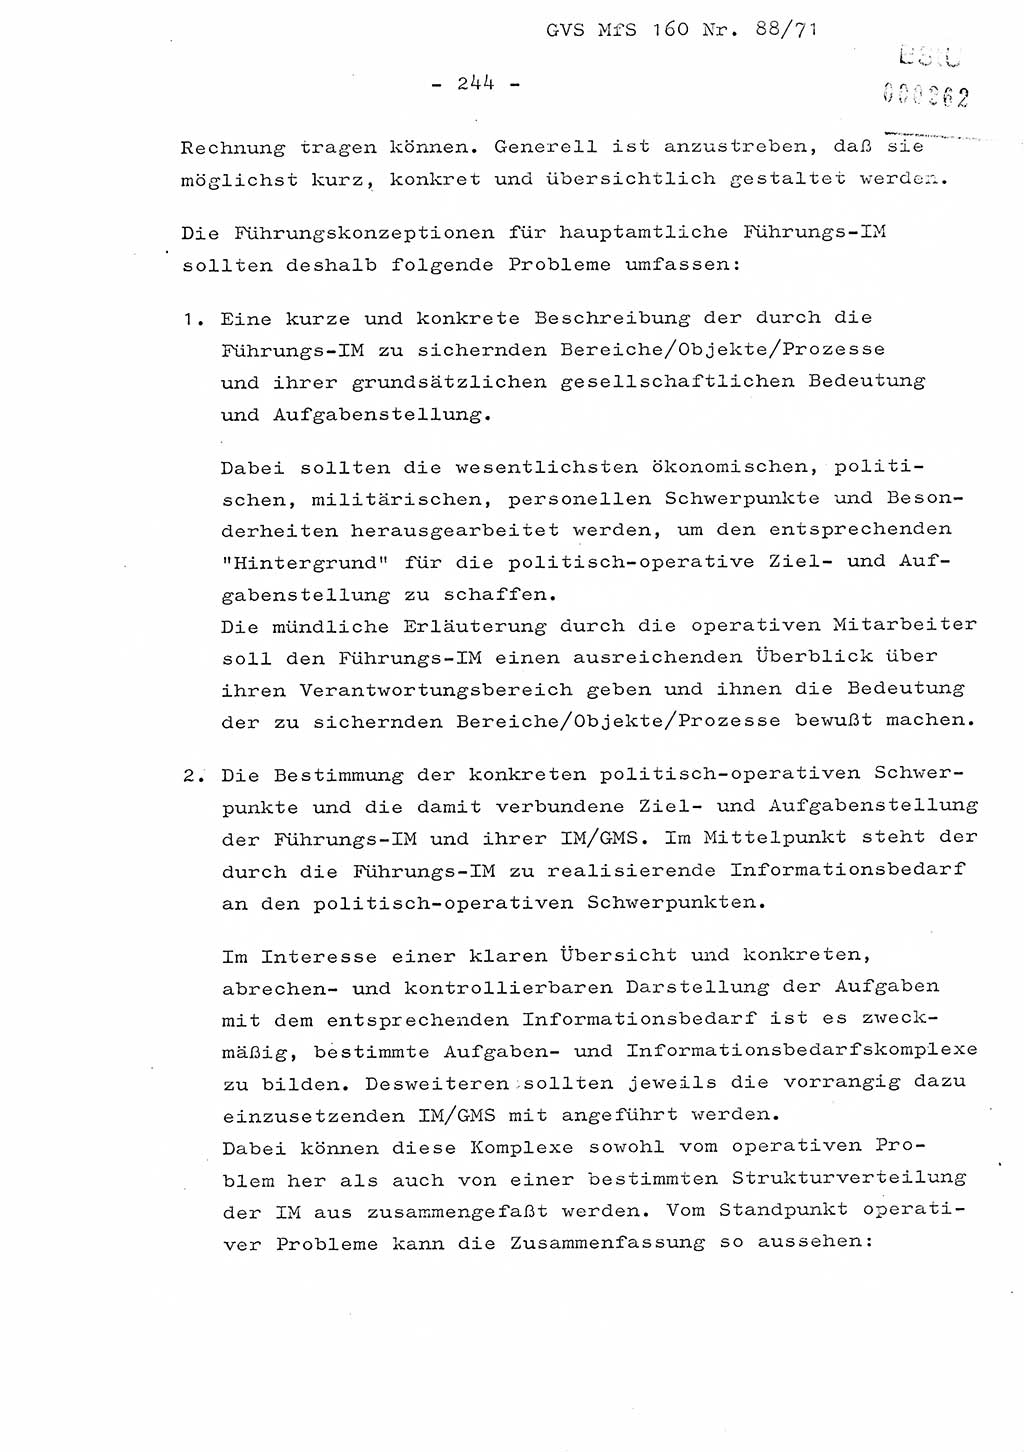 Dissertation Oberstleutnant Josef Schwarz (BV Schwerin), Major Fritz Amm (JHS), Hauptmann Peter Gräßler (JHS), Ministerium für Staatssicherheit (MfS) [Deutsche Demokratische Republik (DDR)], Juristische Hochschule (JHS), Geheime Verschlußsache (GVS) 160-88/71, Potsdam 1972, Seite 244 (Diss. MfS DDR JHS GVS 160-88/71 1972, S. 244)